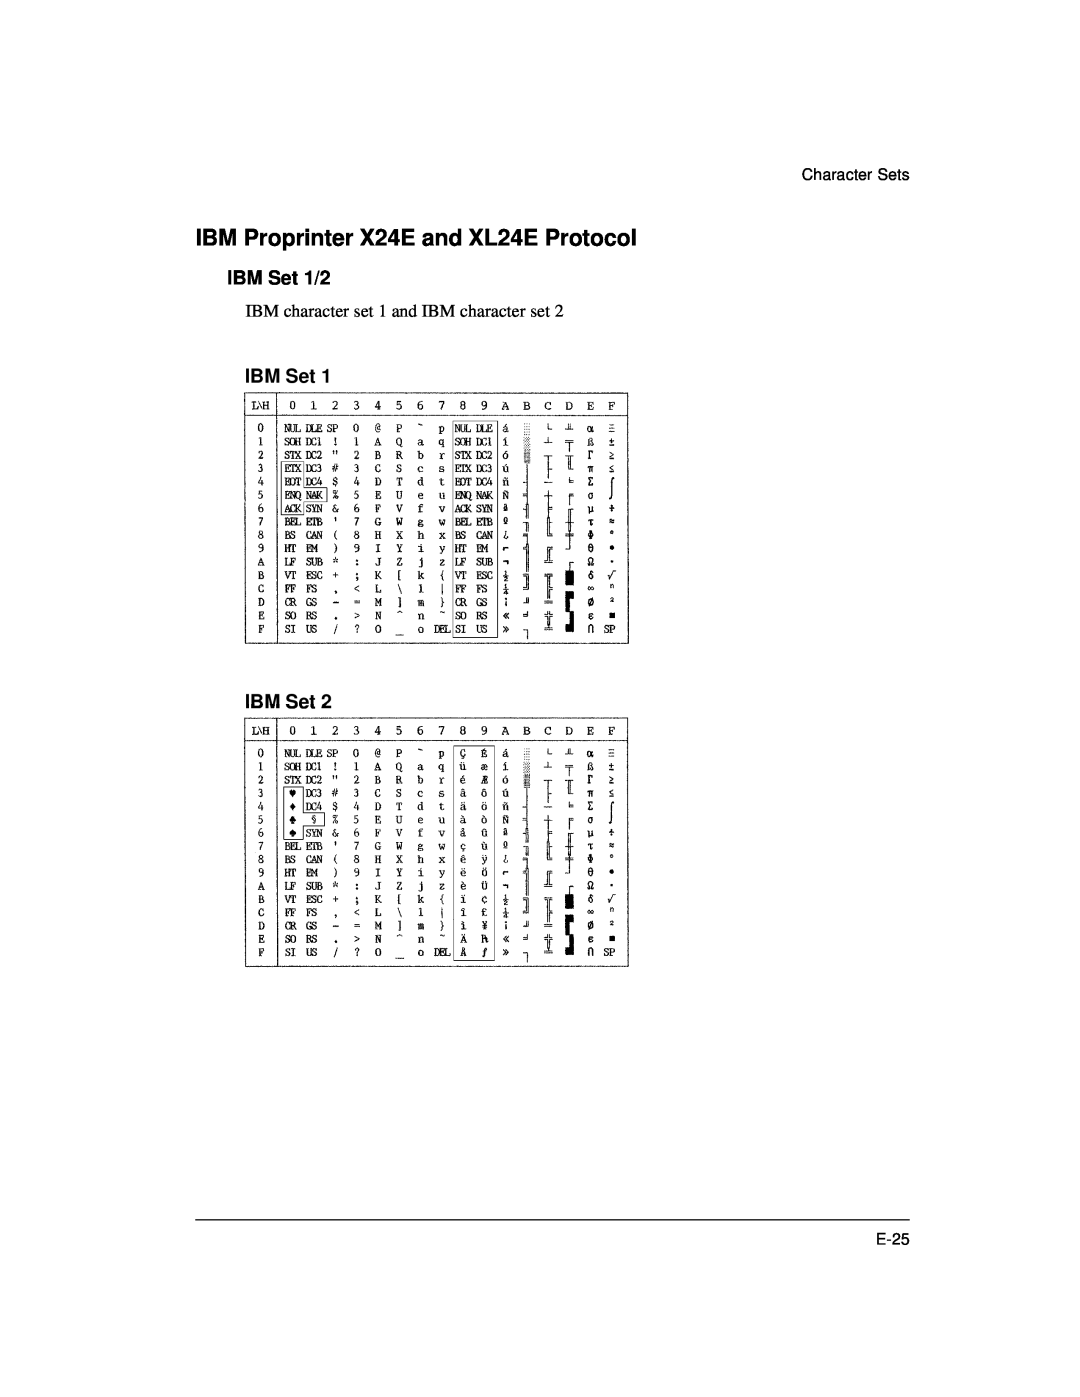 Genicom LA36 manual IBM Proprinter X24E and XL24E Protocol, IBM Set 1/2, IBM Set IBM Set 